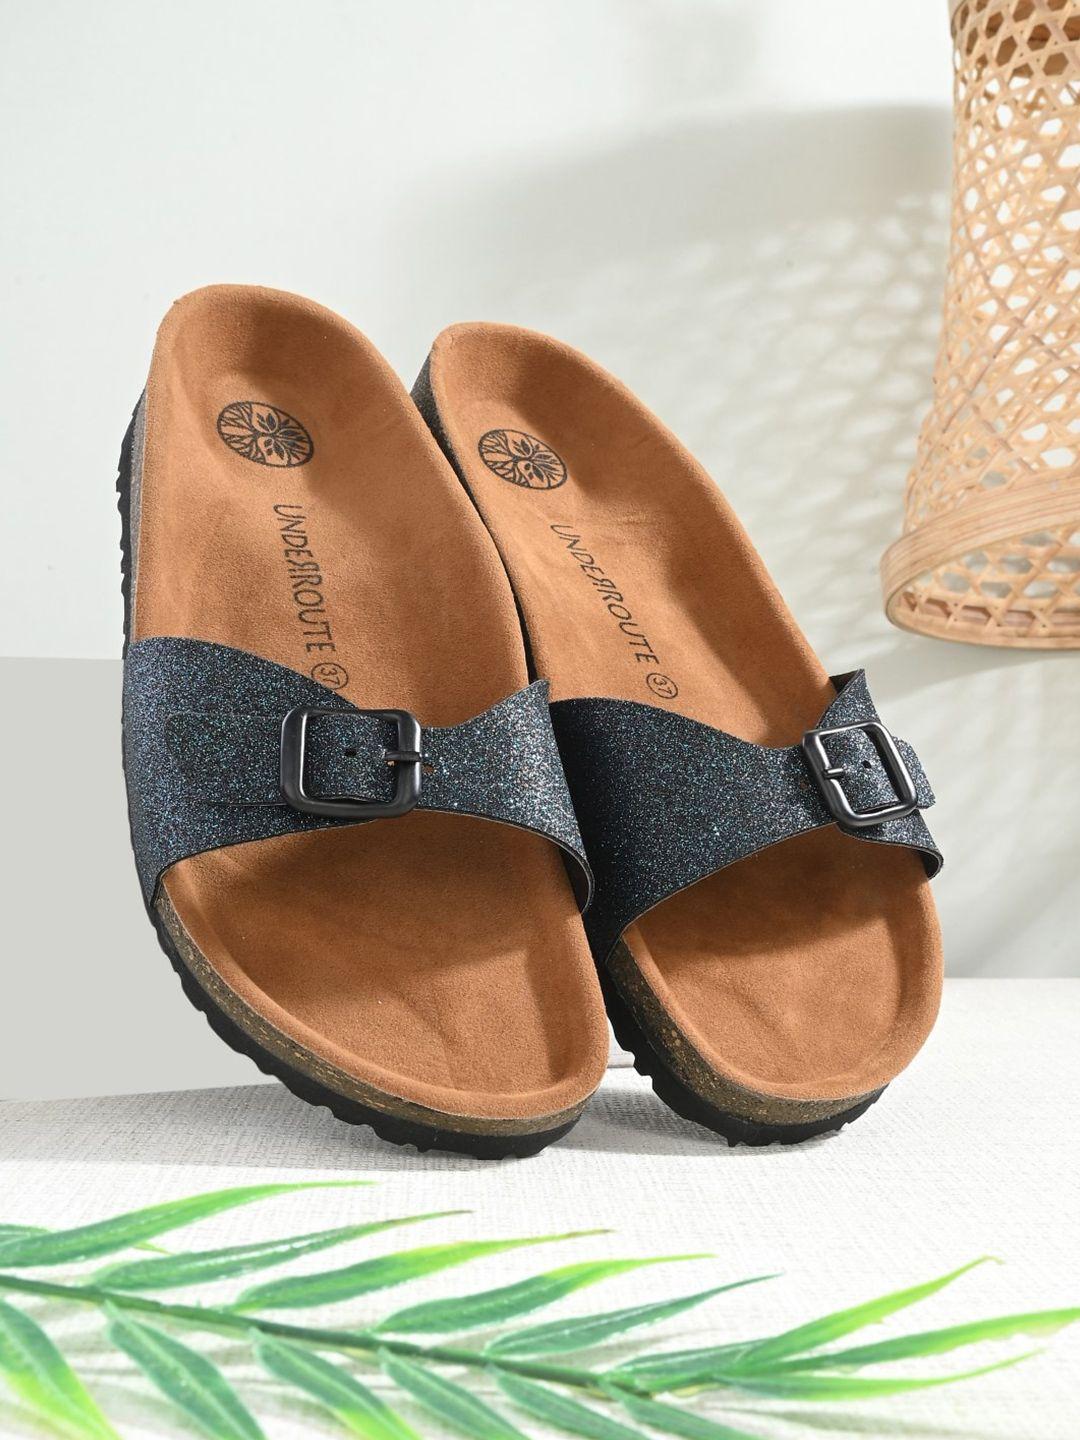 underroute-women-comfort-sandals